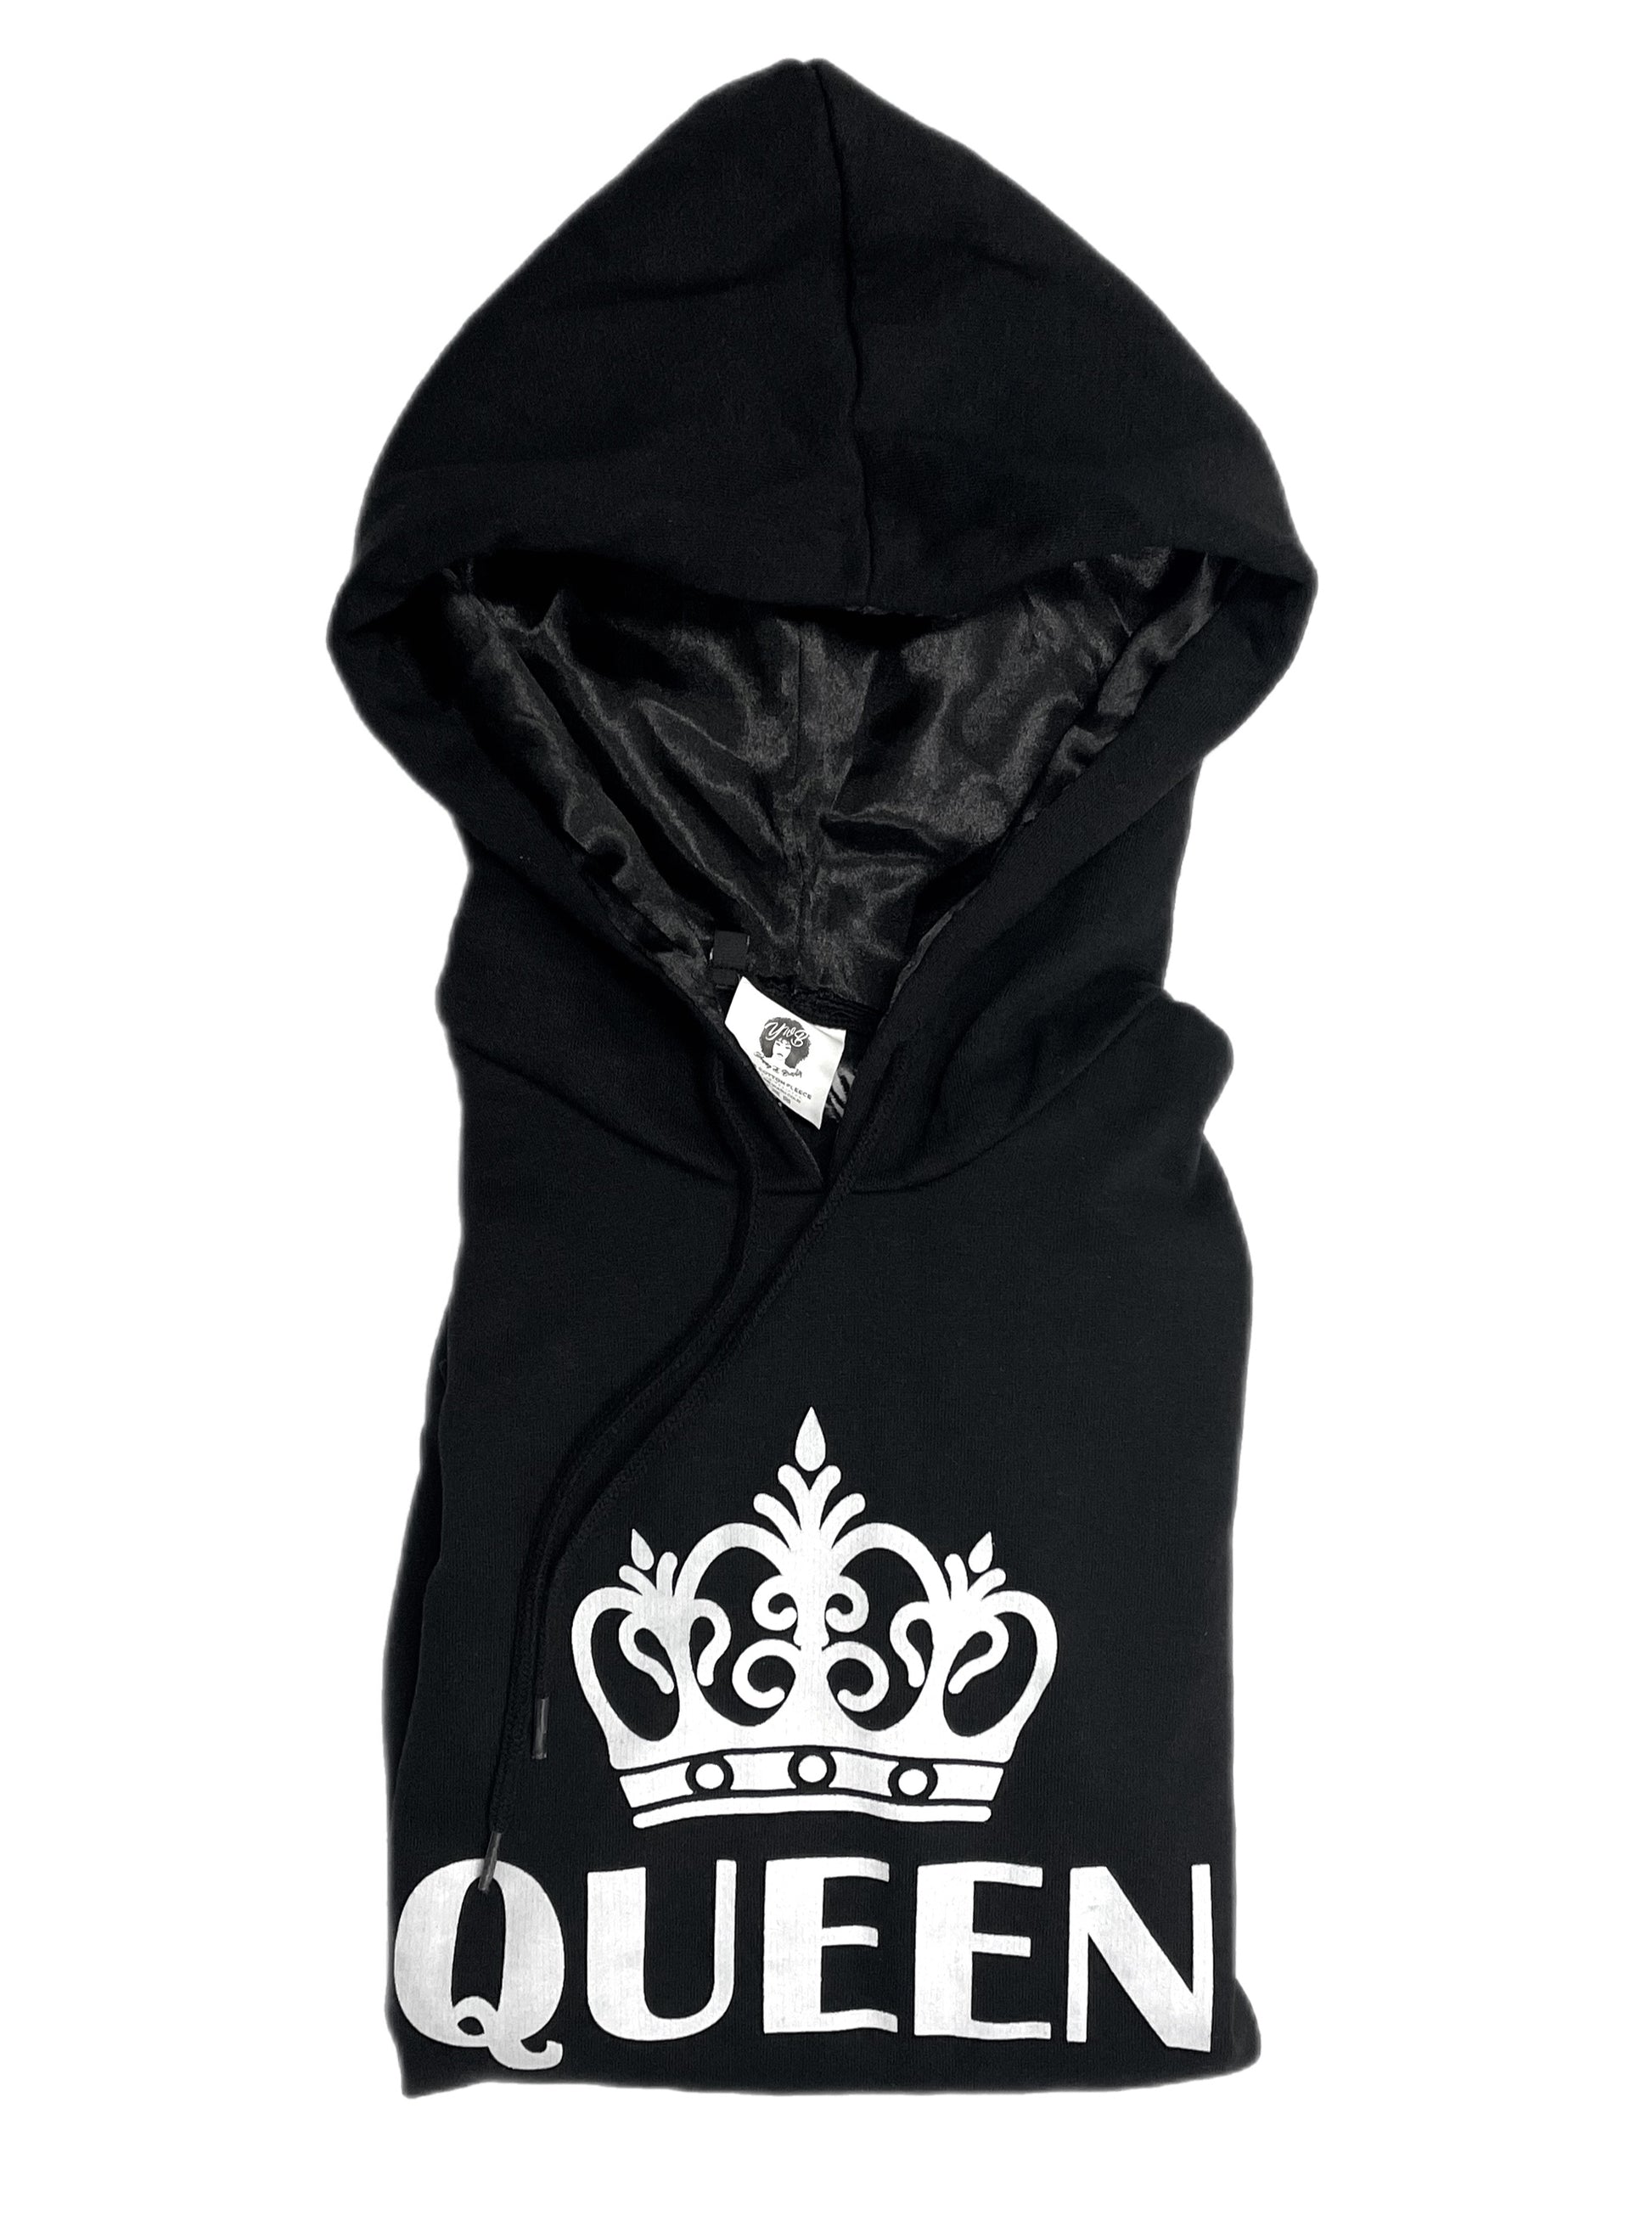 queen satin lined hoodie